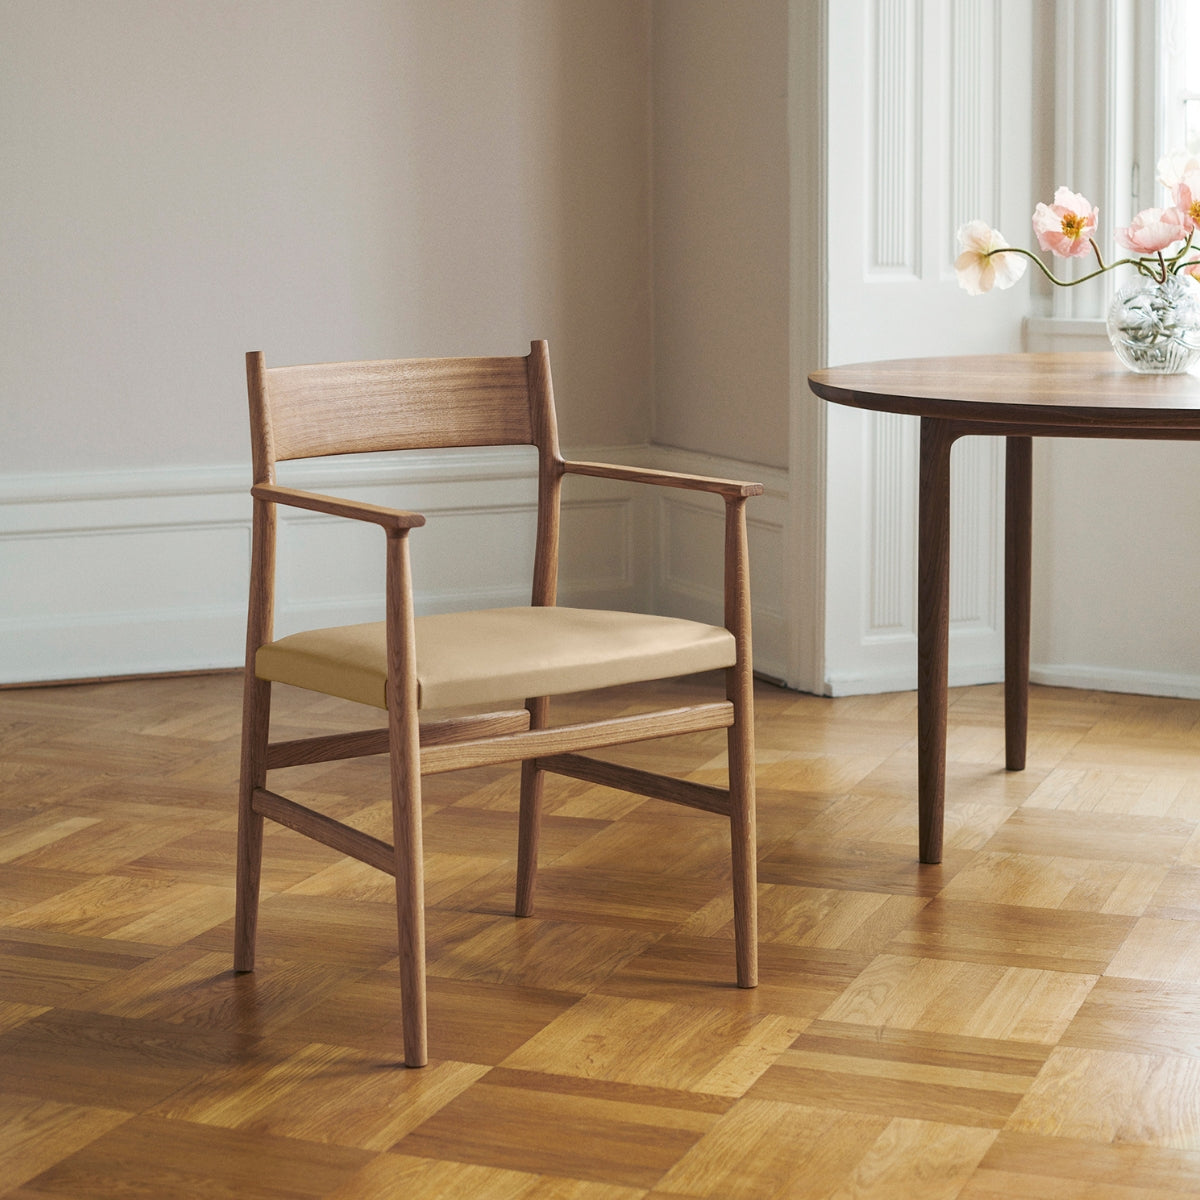 Brdr. Krüger | Arv Chair With Armrest, Solid Backrest - Weaved Seat - Bolighuset Werenberg